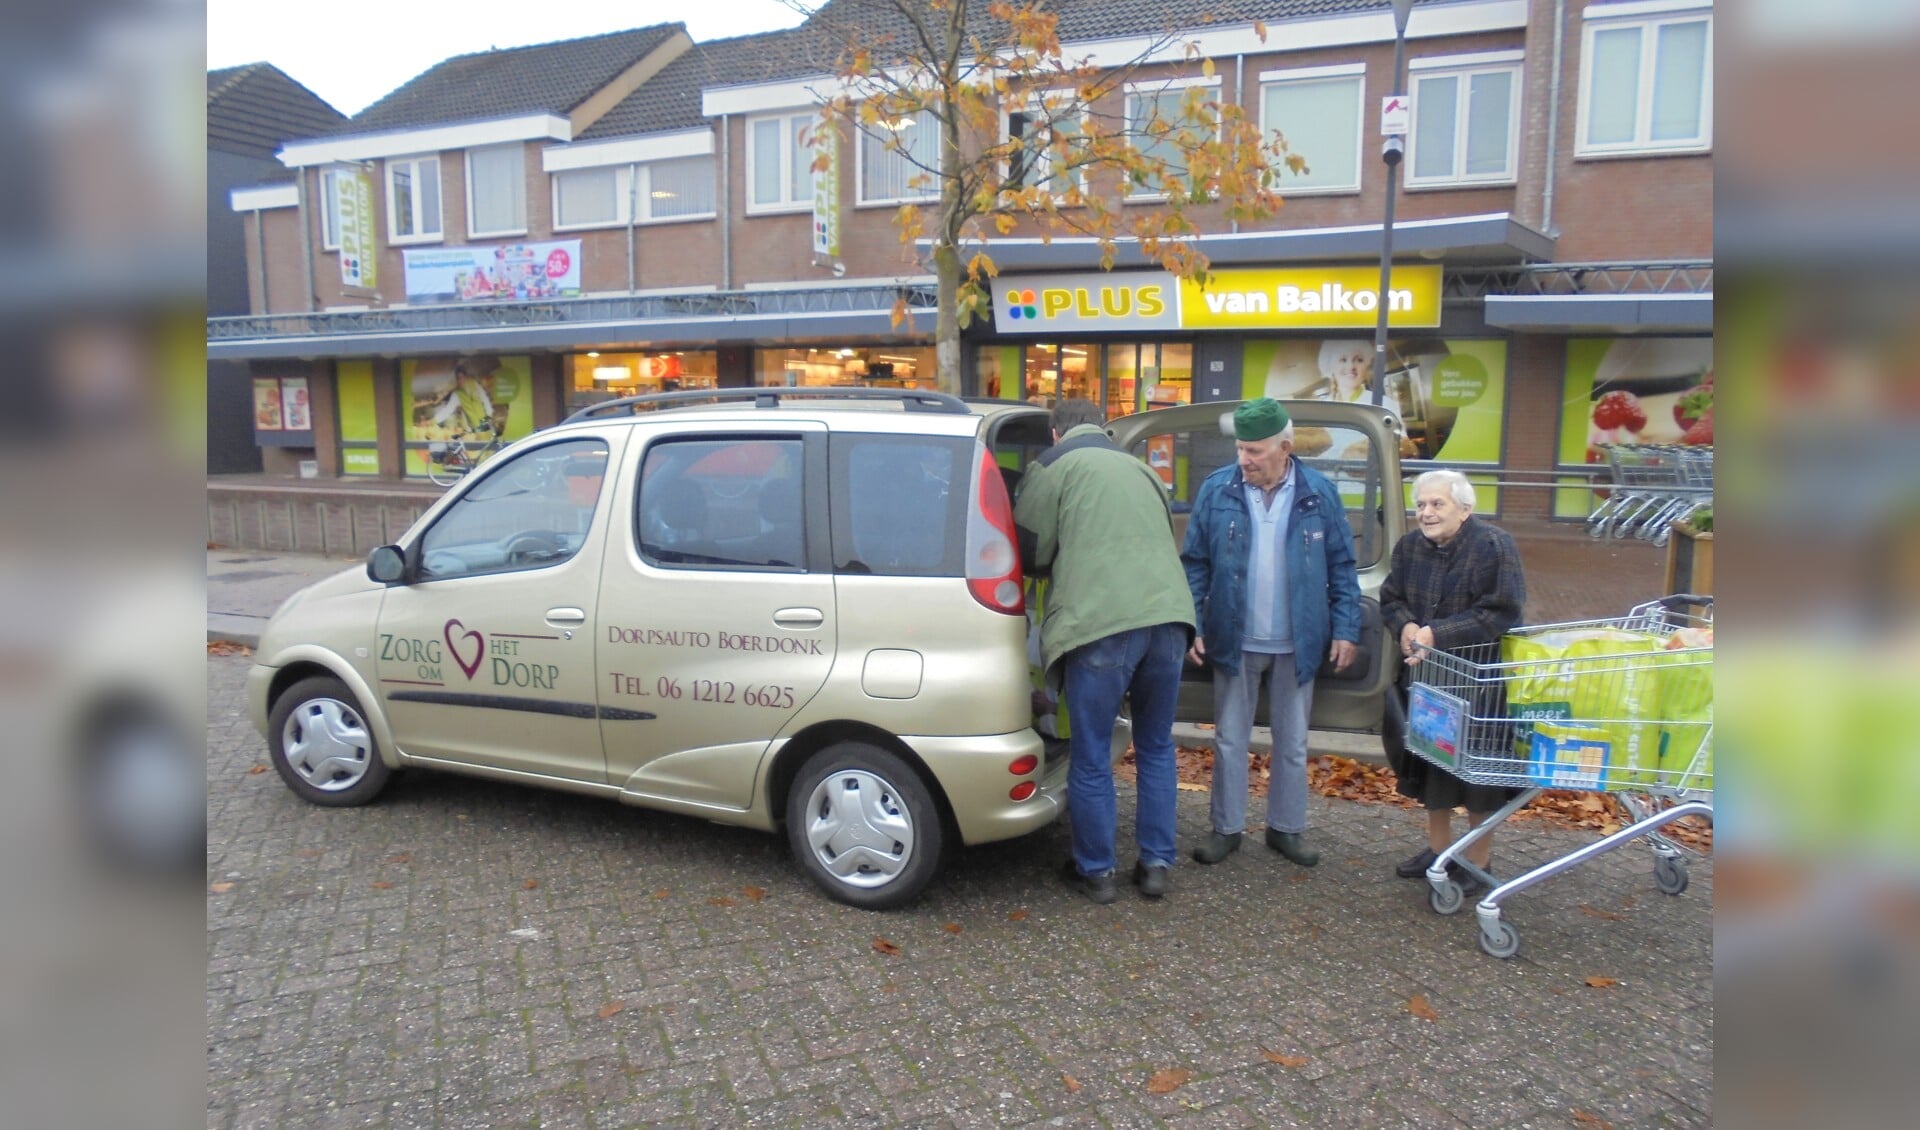 De dorpsauto in Boerdonk wordt vaak gebruikt. 